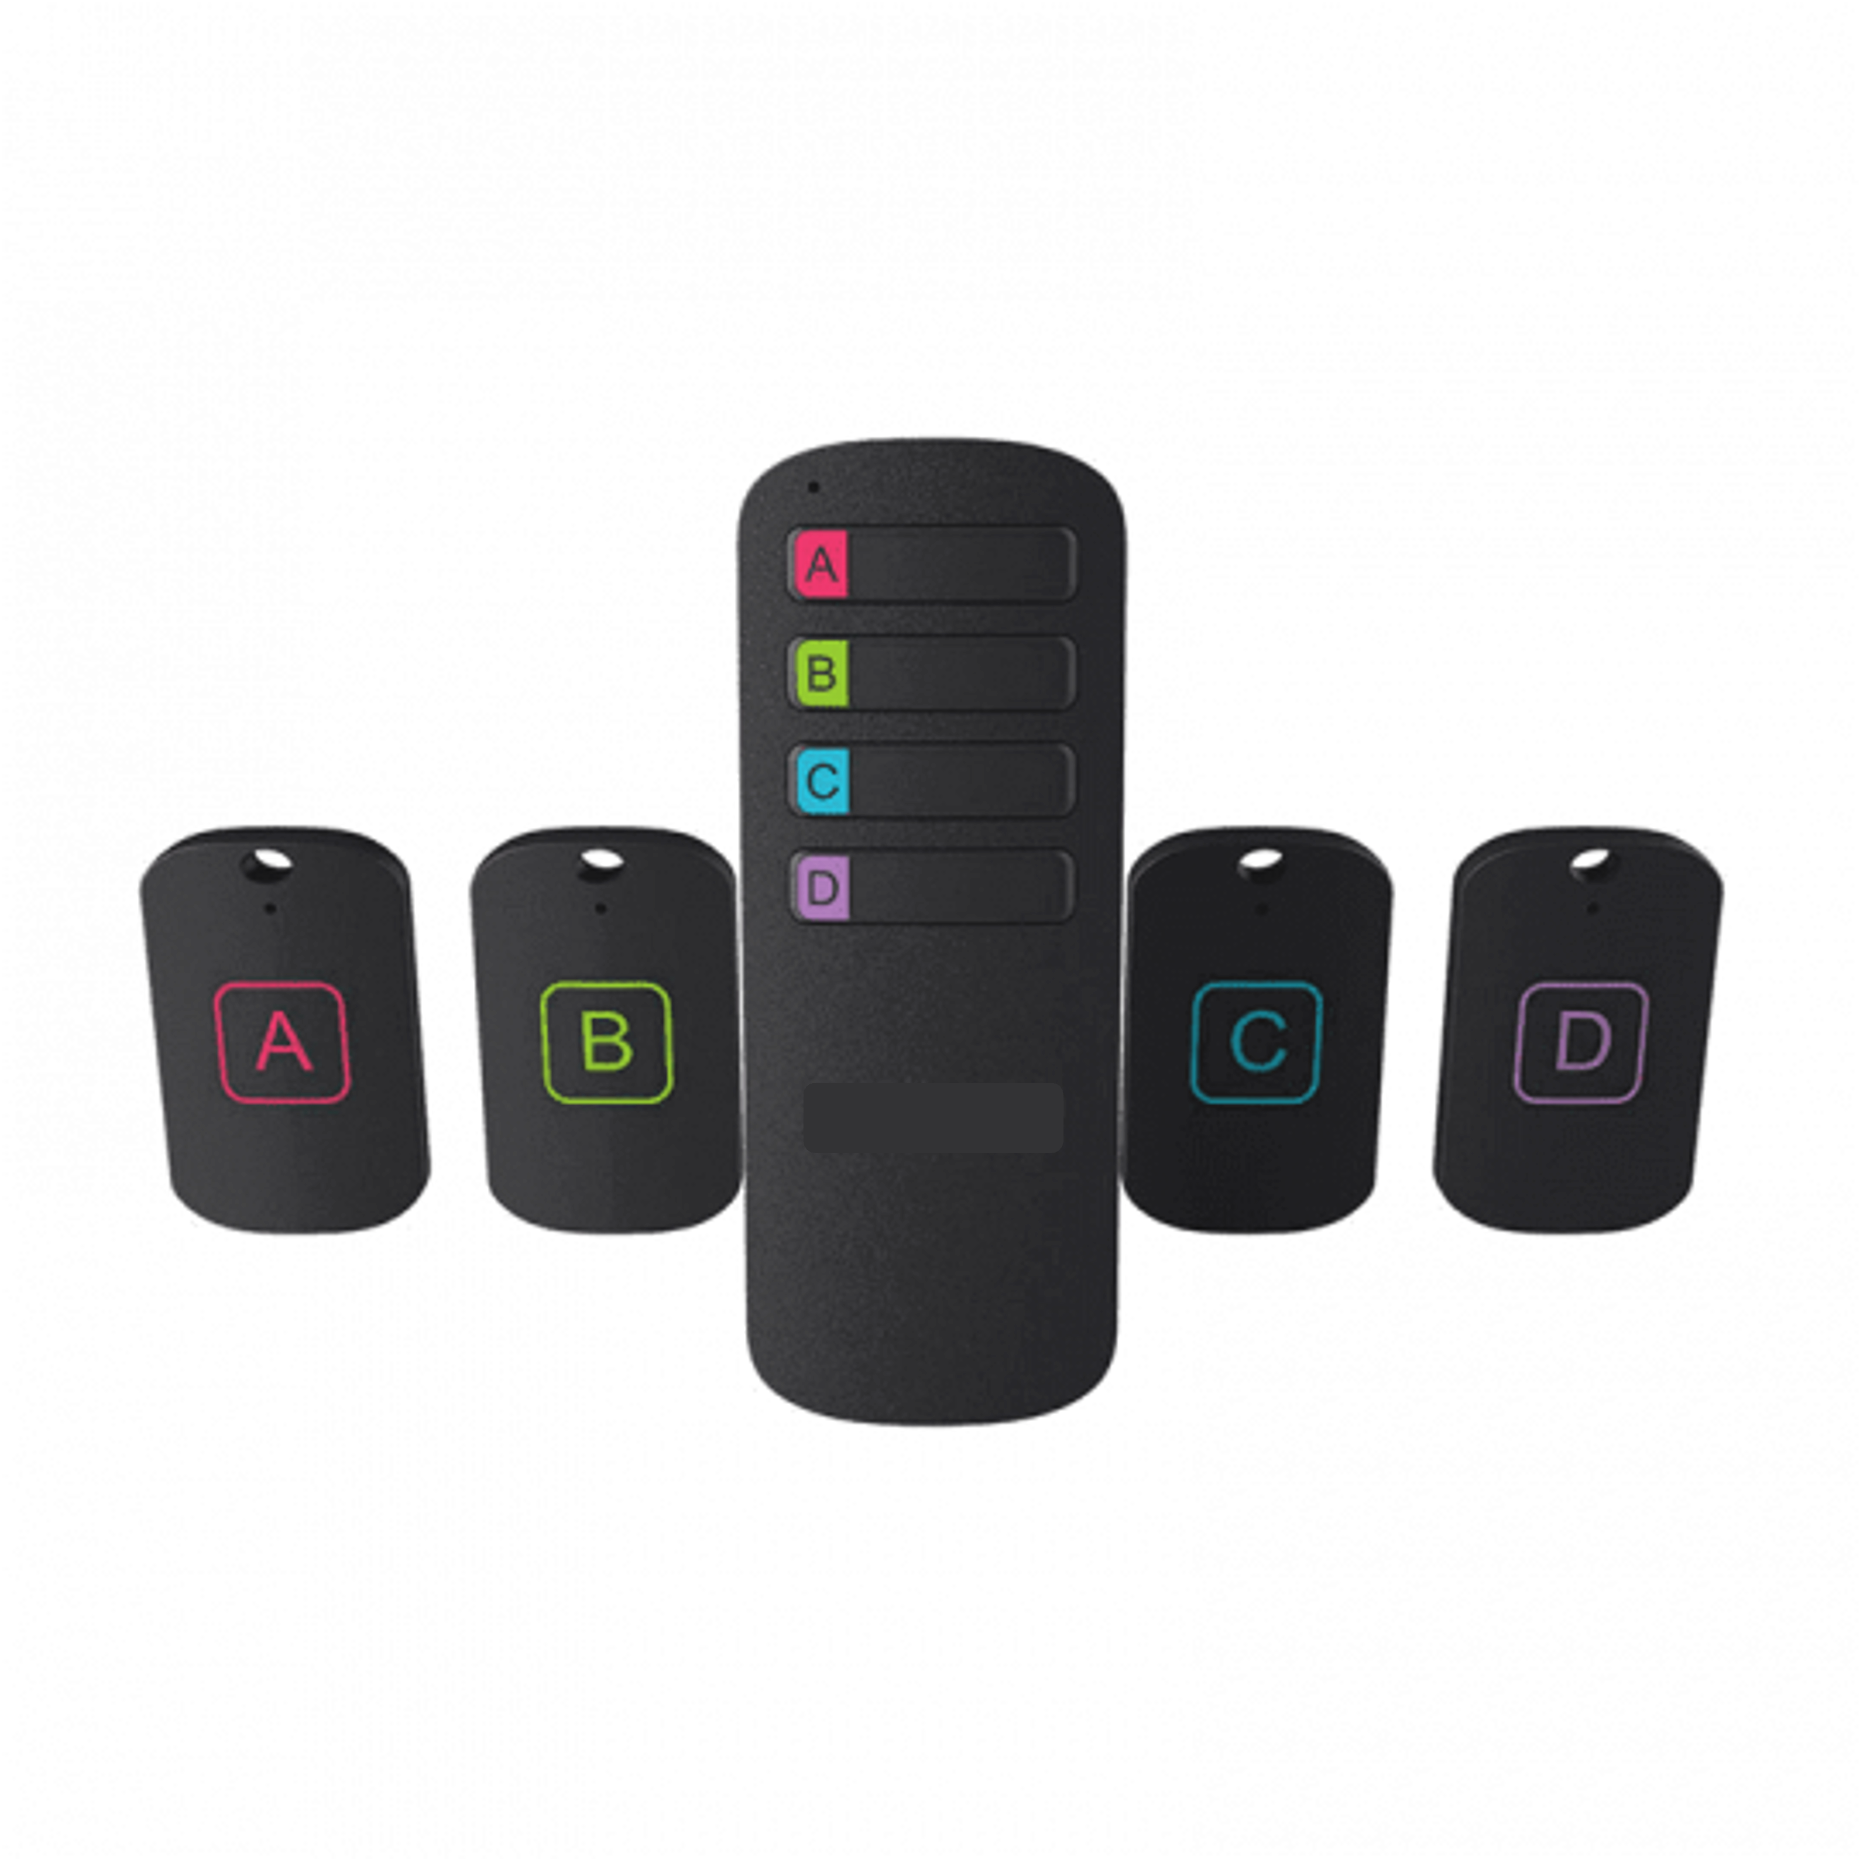 télécommande avec 4 boutons de couleurs différentes et 4 balises étiquettées chacune d'une des 4 couleurs